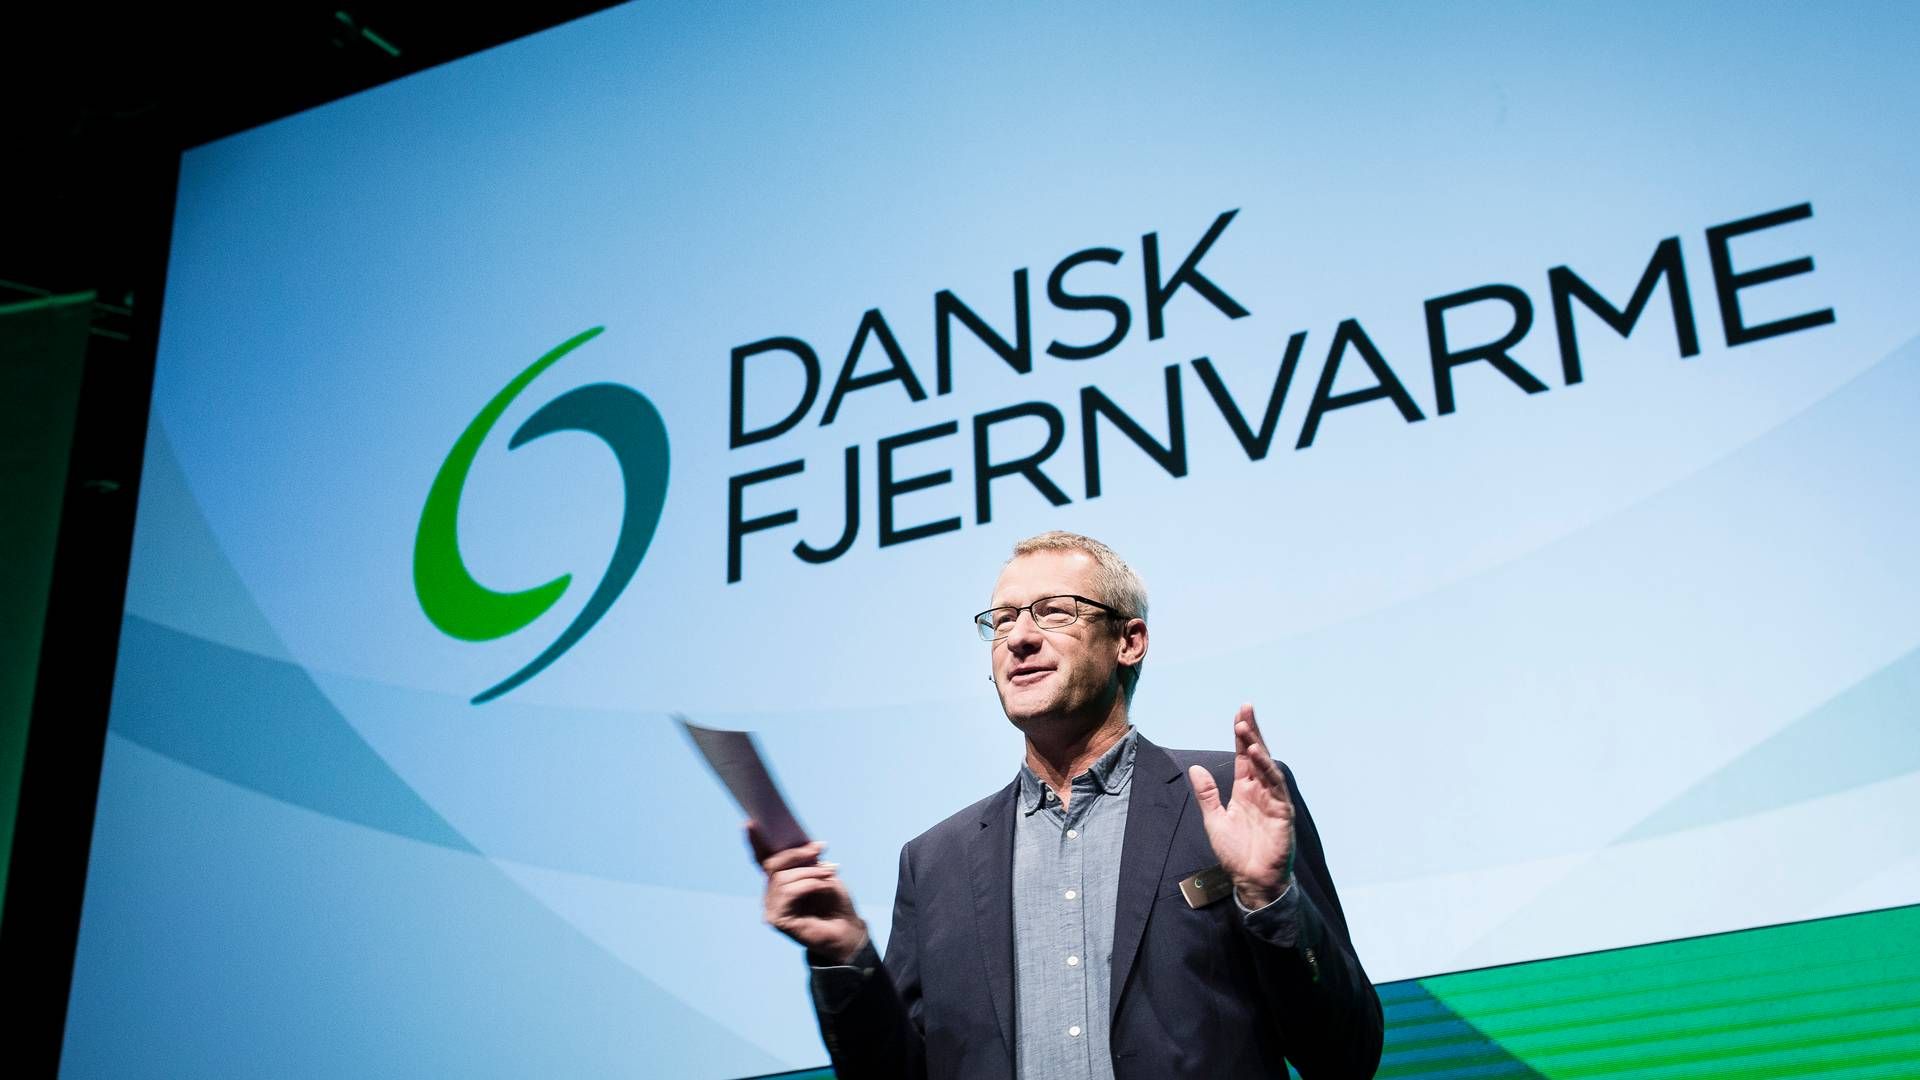 Foto: Dansk Fjernvarme